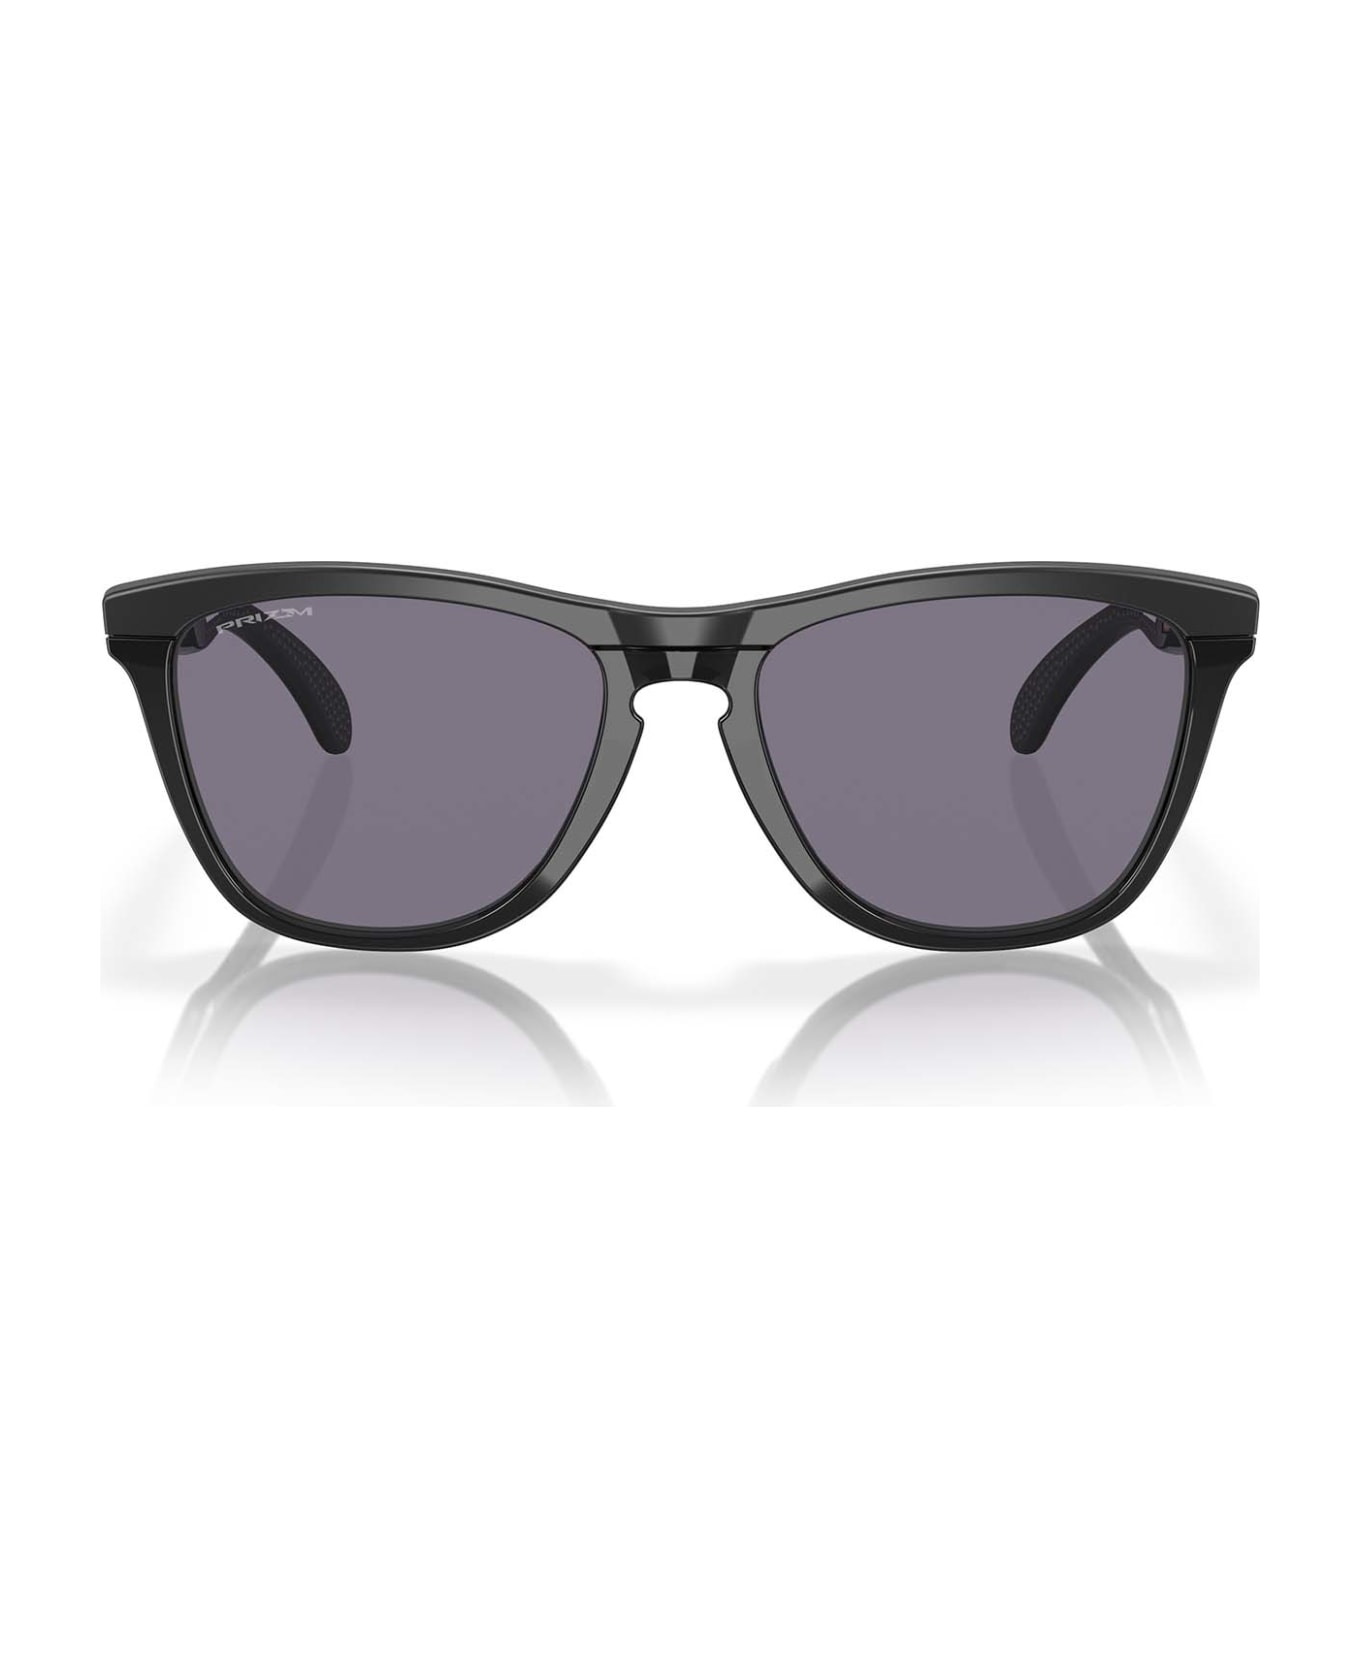 Oakley Oo9284 Matte Black Sunglasses - Matte Black